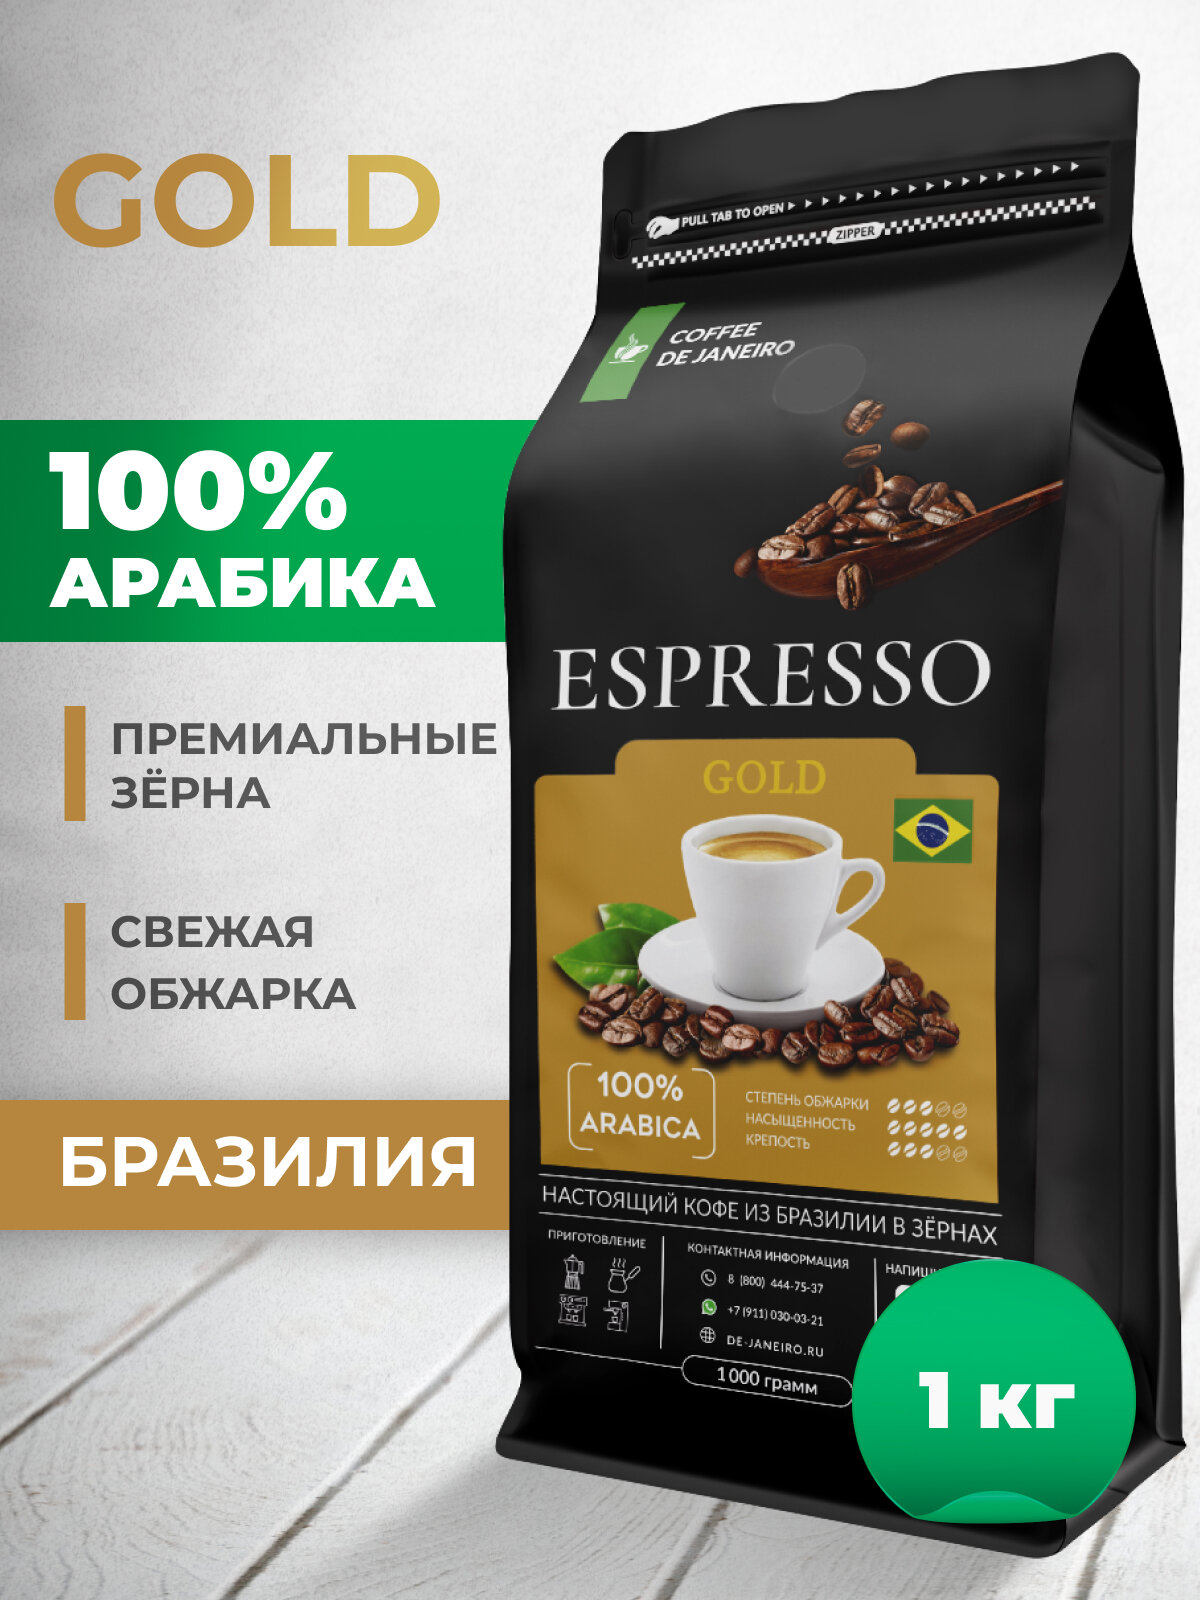 Кофе в зернах DE JANEIRO (Де Жанейро) ESPRESSO GOLD, 100% Арабика, кофе зерновой, Бразилия